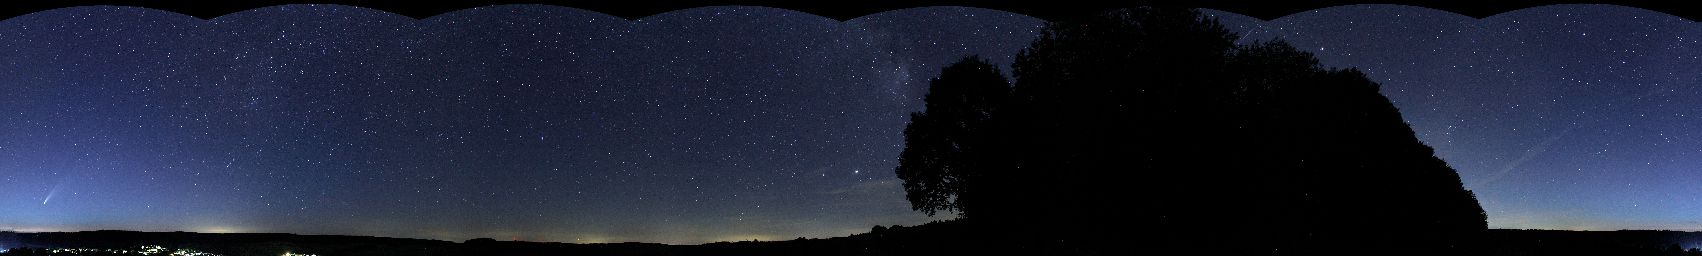 Zylindrisches Nachthimmel-Panorama mit Komet C/2020 F3 (NEOWISE) im Spessart bei Lettgenbrunn, Jossgrund, Main-Kinzig-Kreis, Hessen, 63637, DeutschlandZylindrisches Nachthimmel-Panorama mit Komet C/2020 F3 (NEOWISE) im Spessart bei Lettgenbrunn, Jossgrund, Main-Kinzig-Kreis, Hessen, 63637, Deutschland © Joachim Broser